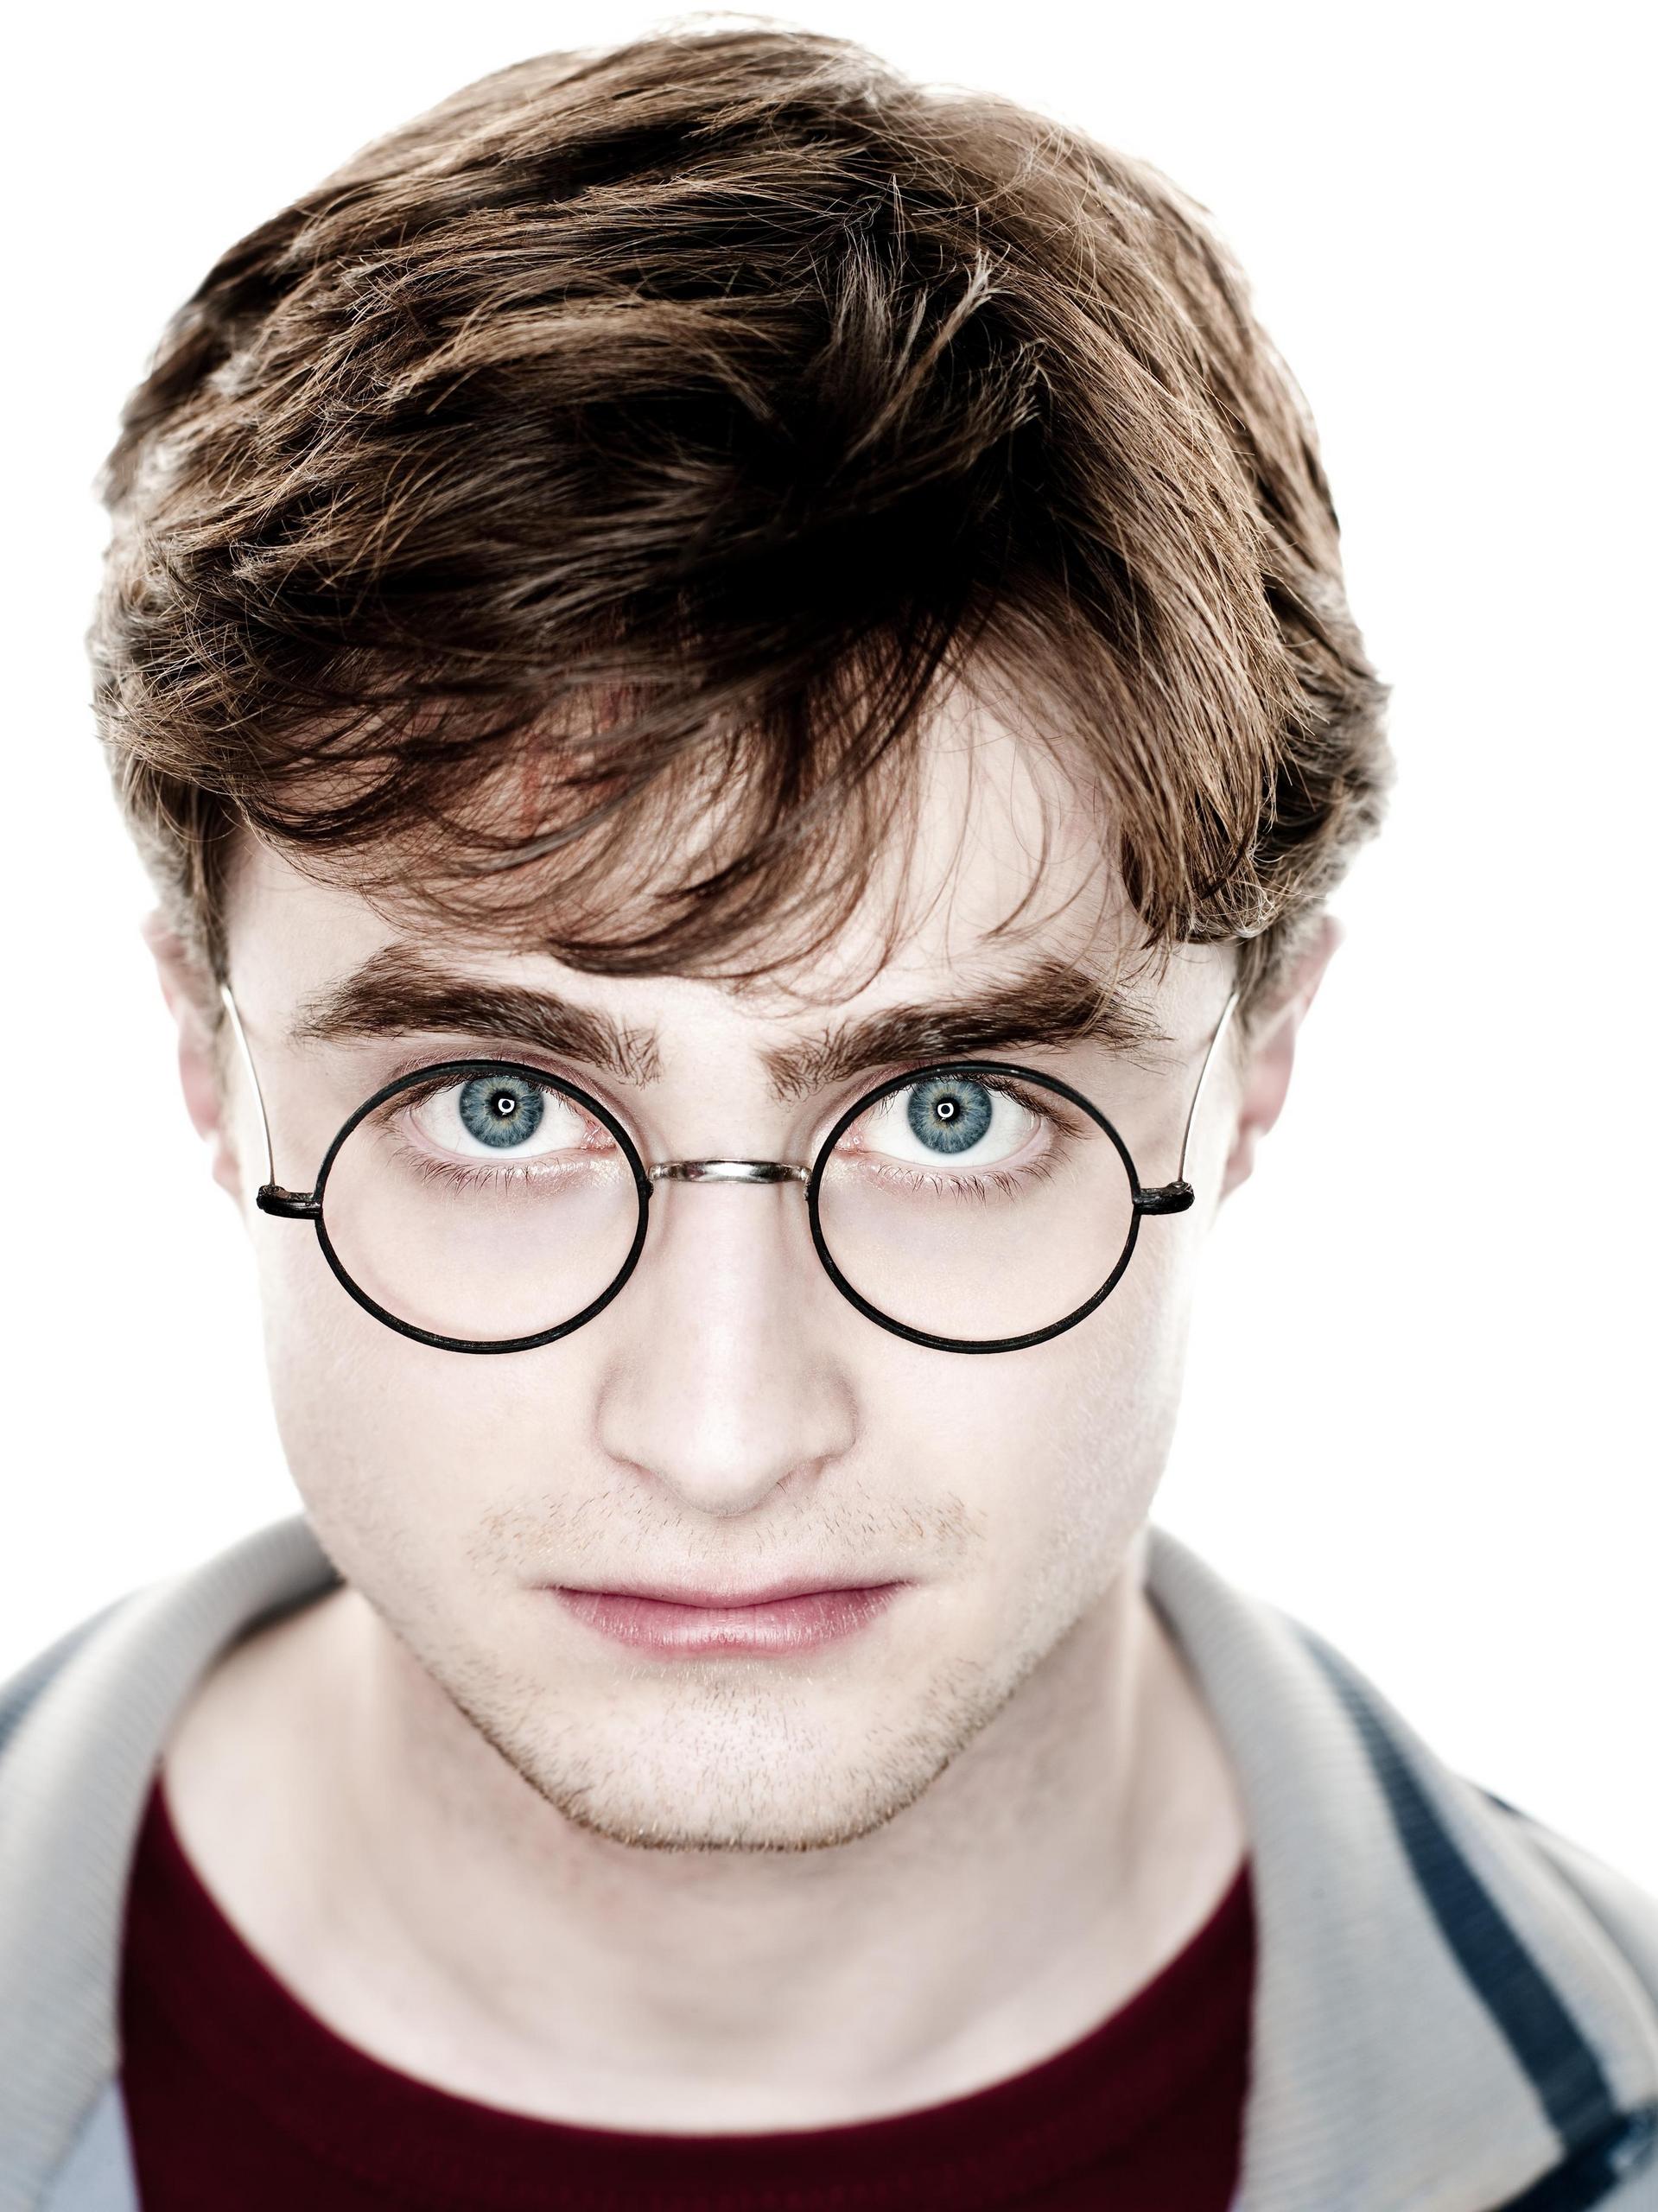 Harry Potter tendrá nuevo libro en octubre - Harry Potter